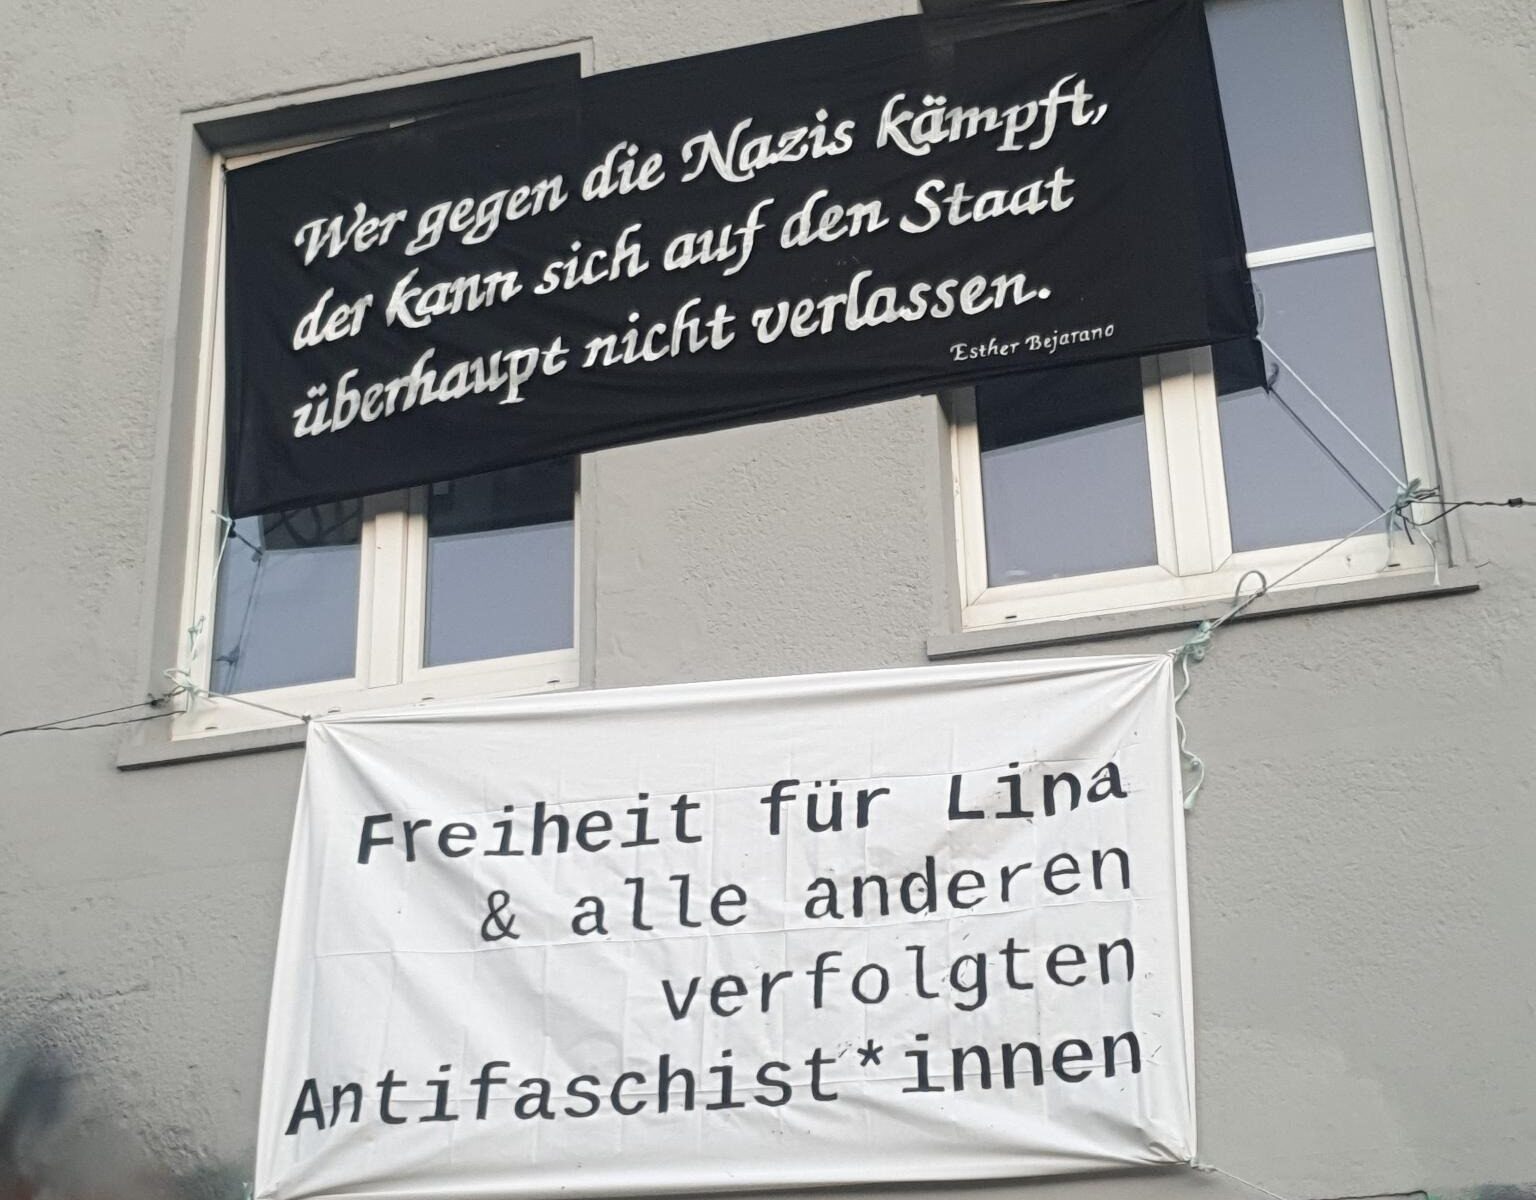 Zwei Banner sind zu sehen. Auf einem steht "Wer gegen Nazis kämpft, der kann sich auf den Staat überhaubt nicht verlassen. - Esther Bejarano." Auf dem zweiten steht "Freiheit für Lina & alle anderen verfolgten Antifaschist*innen."